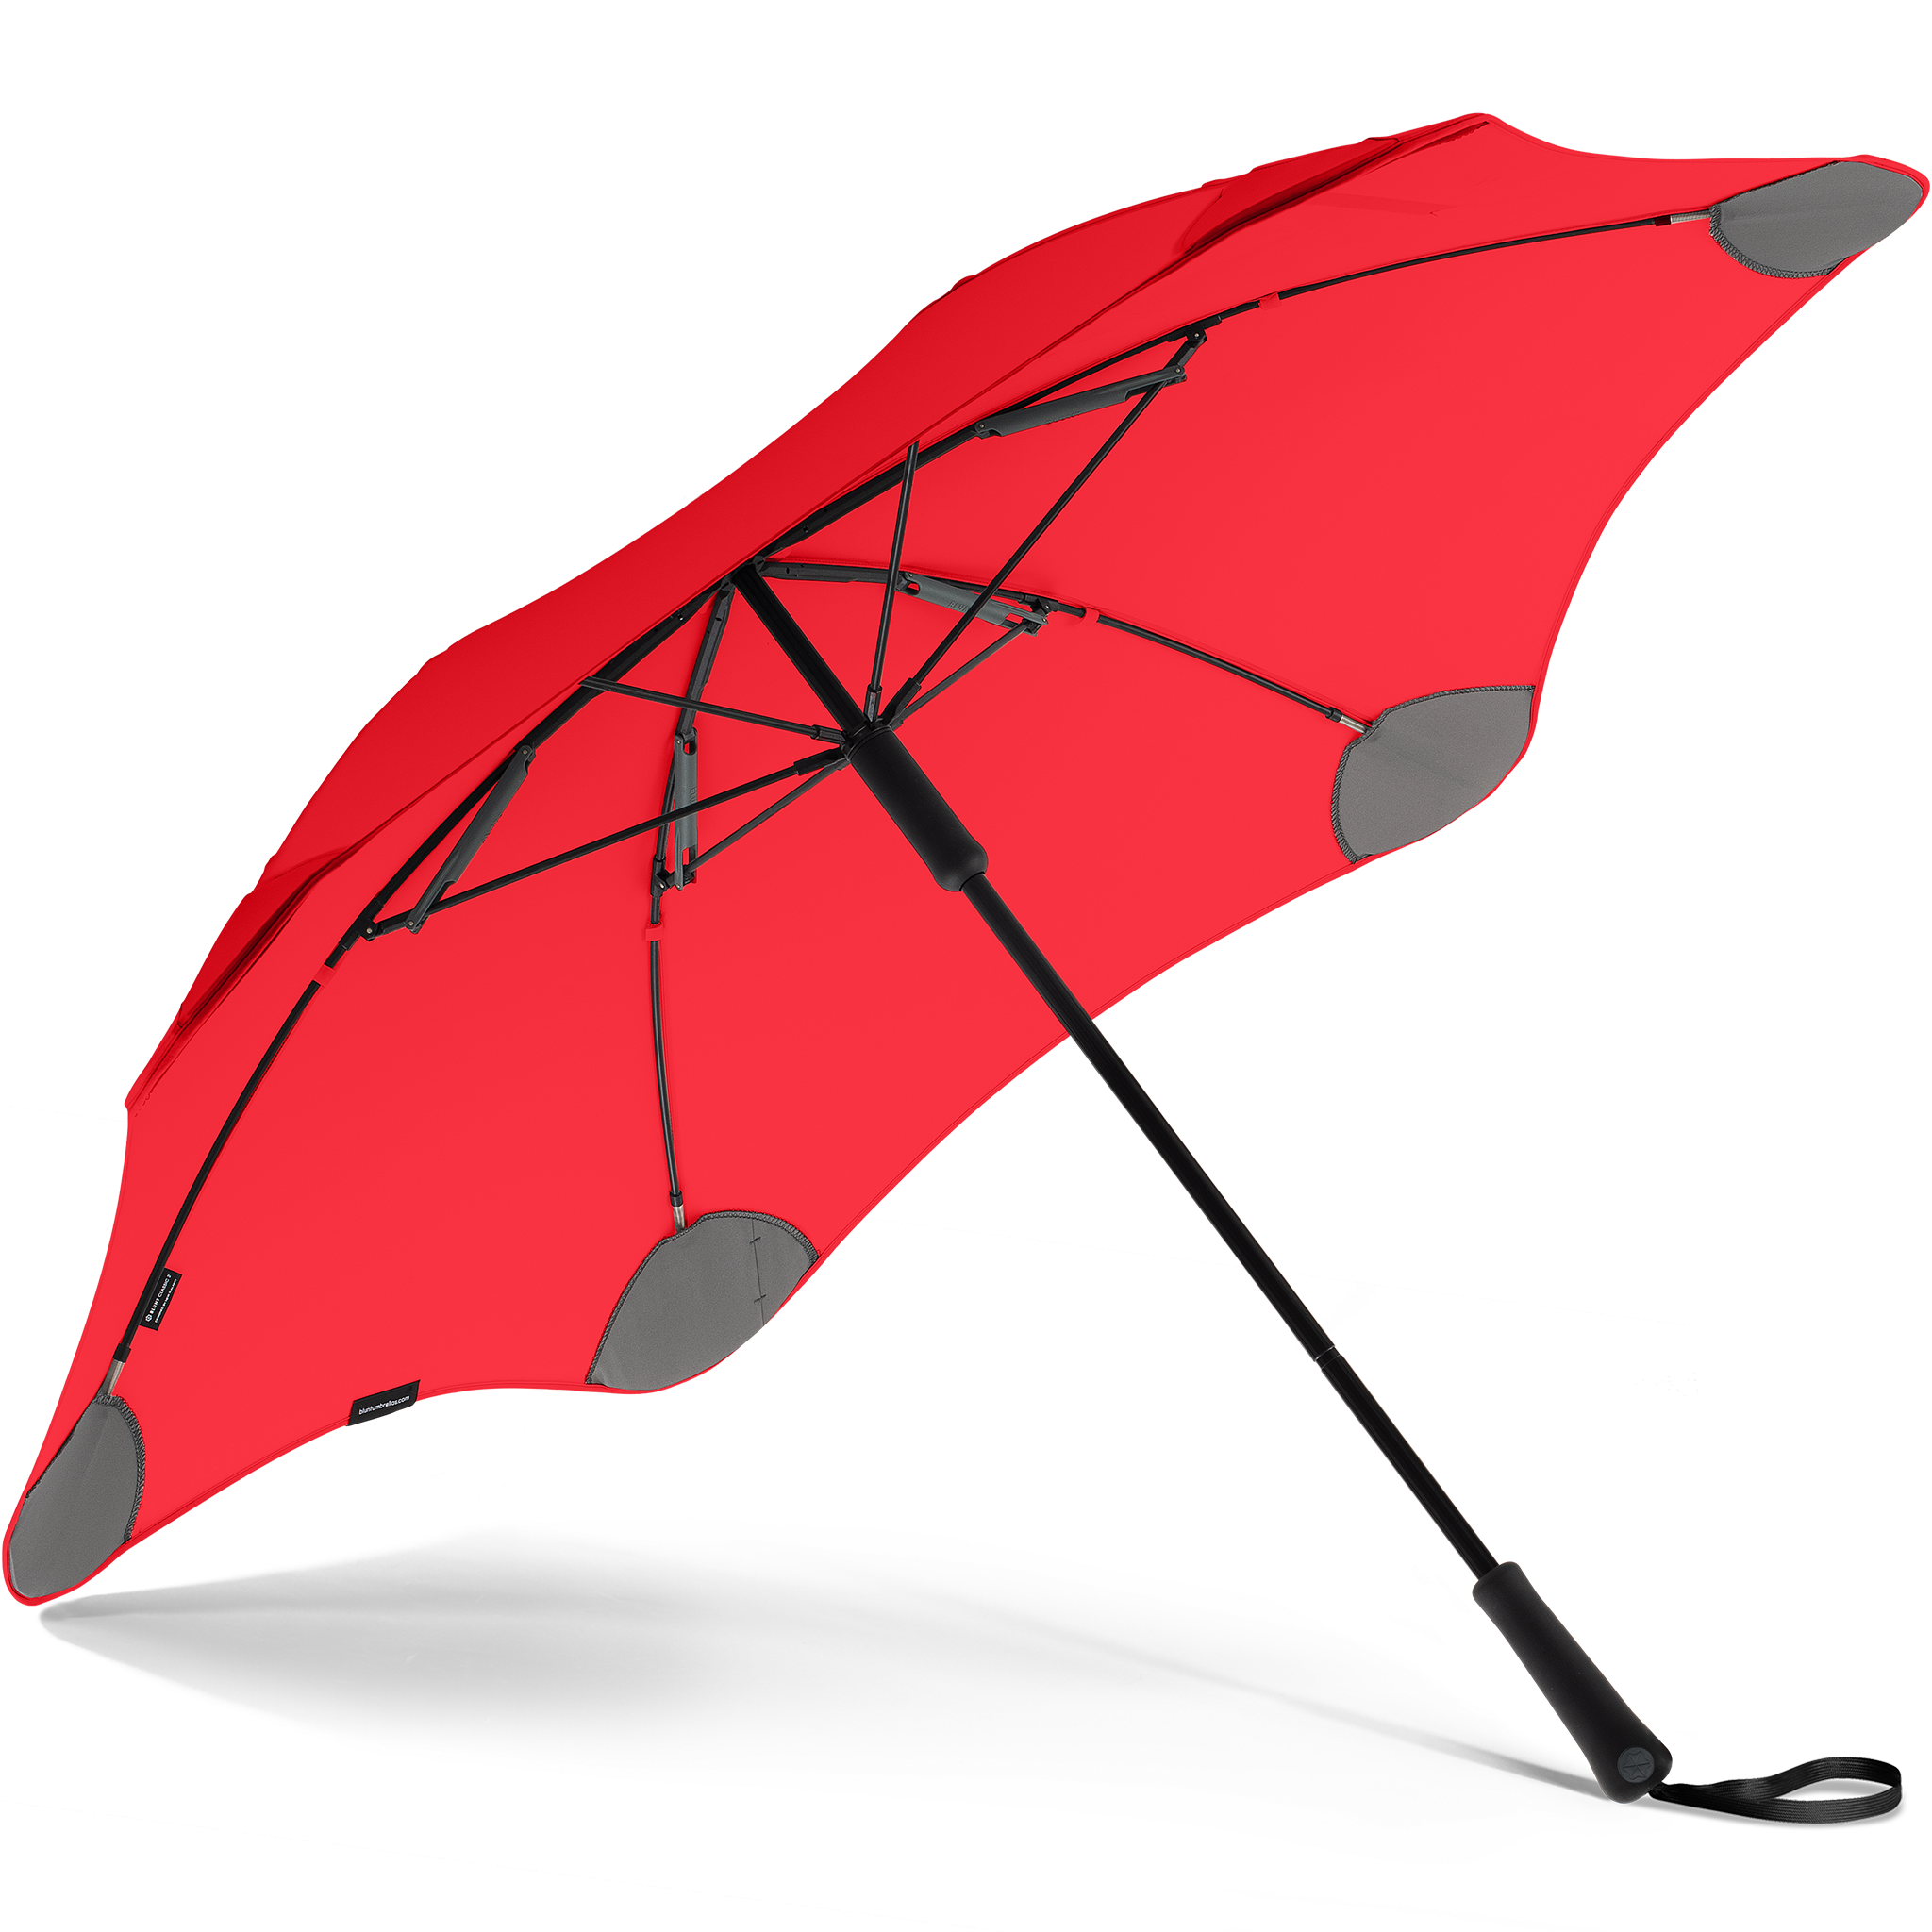 2020 Classic Red Blunt Umbrella Under View